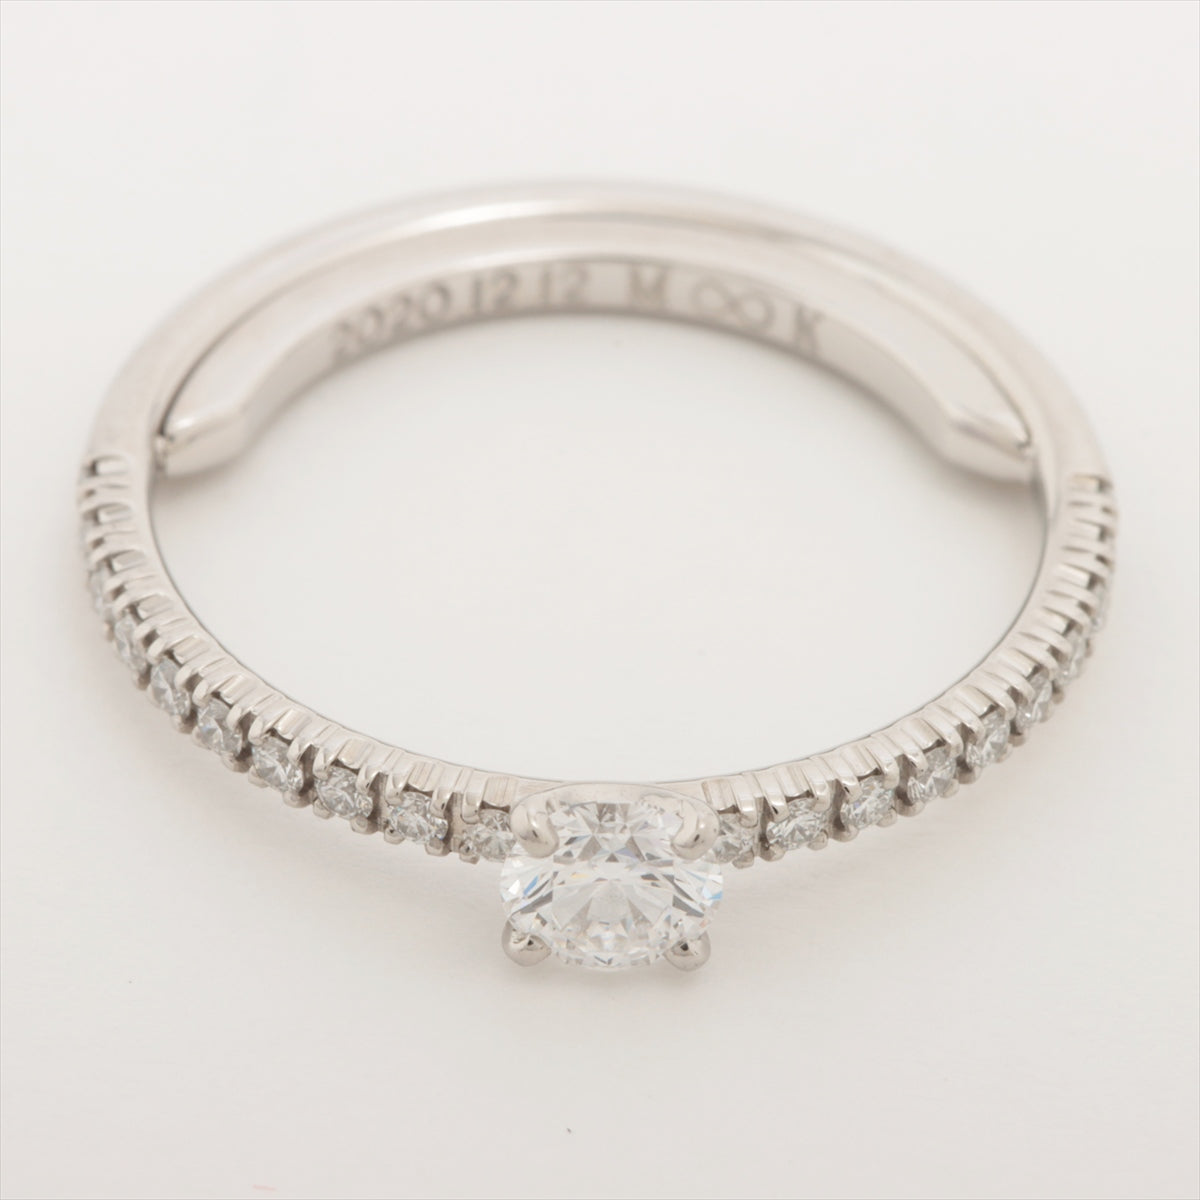 Cartier Etincelle De Cartier Heart Eternity Diamond Ring Pt950 2.3g 0.19 D VVS2 EX FB CRN4744249